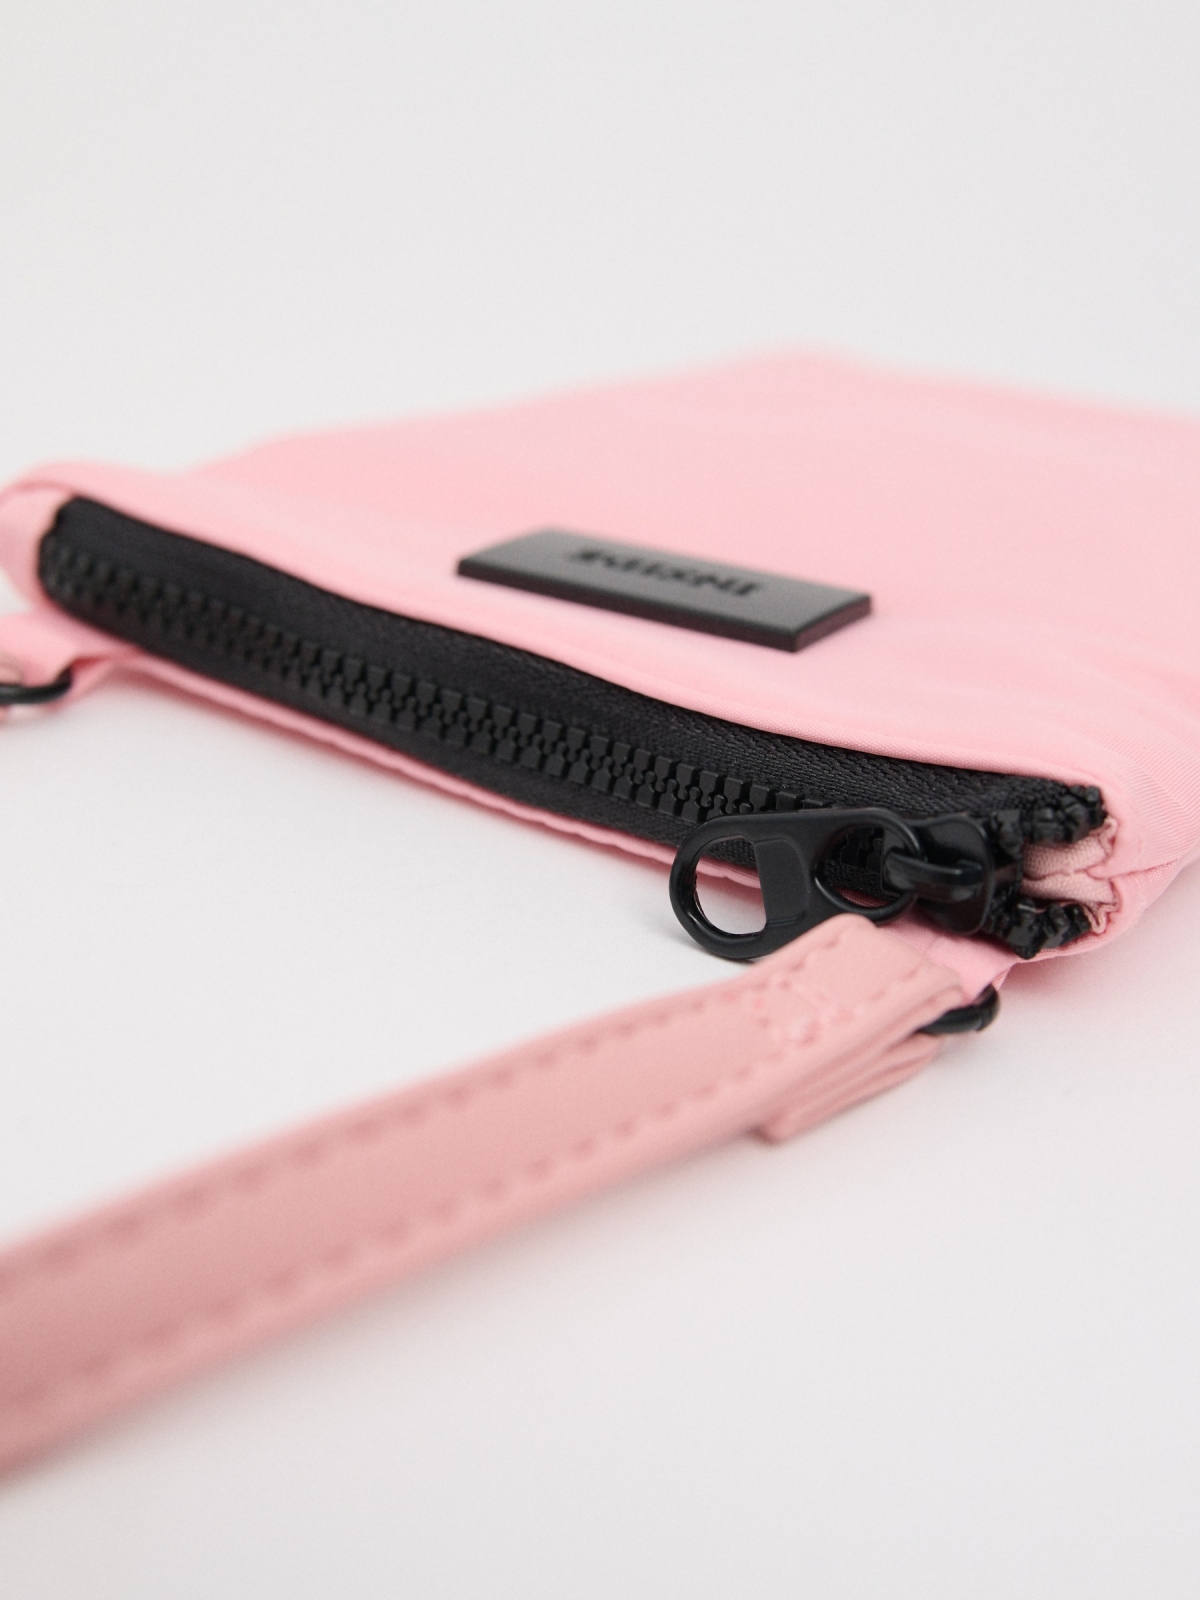 Bolsa rosa para smartphone rosa vista detalhe